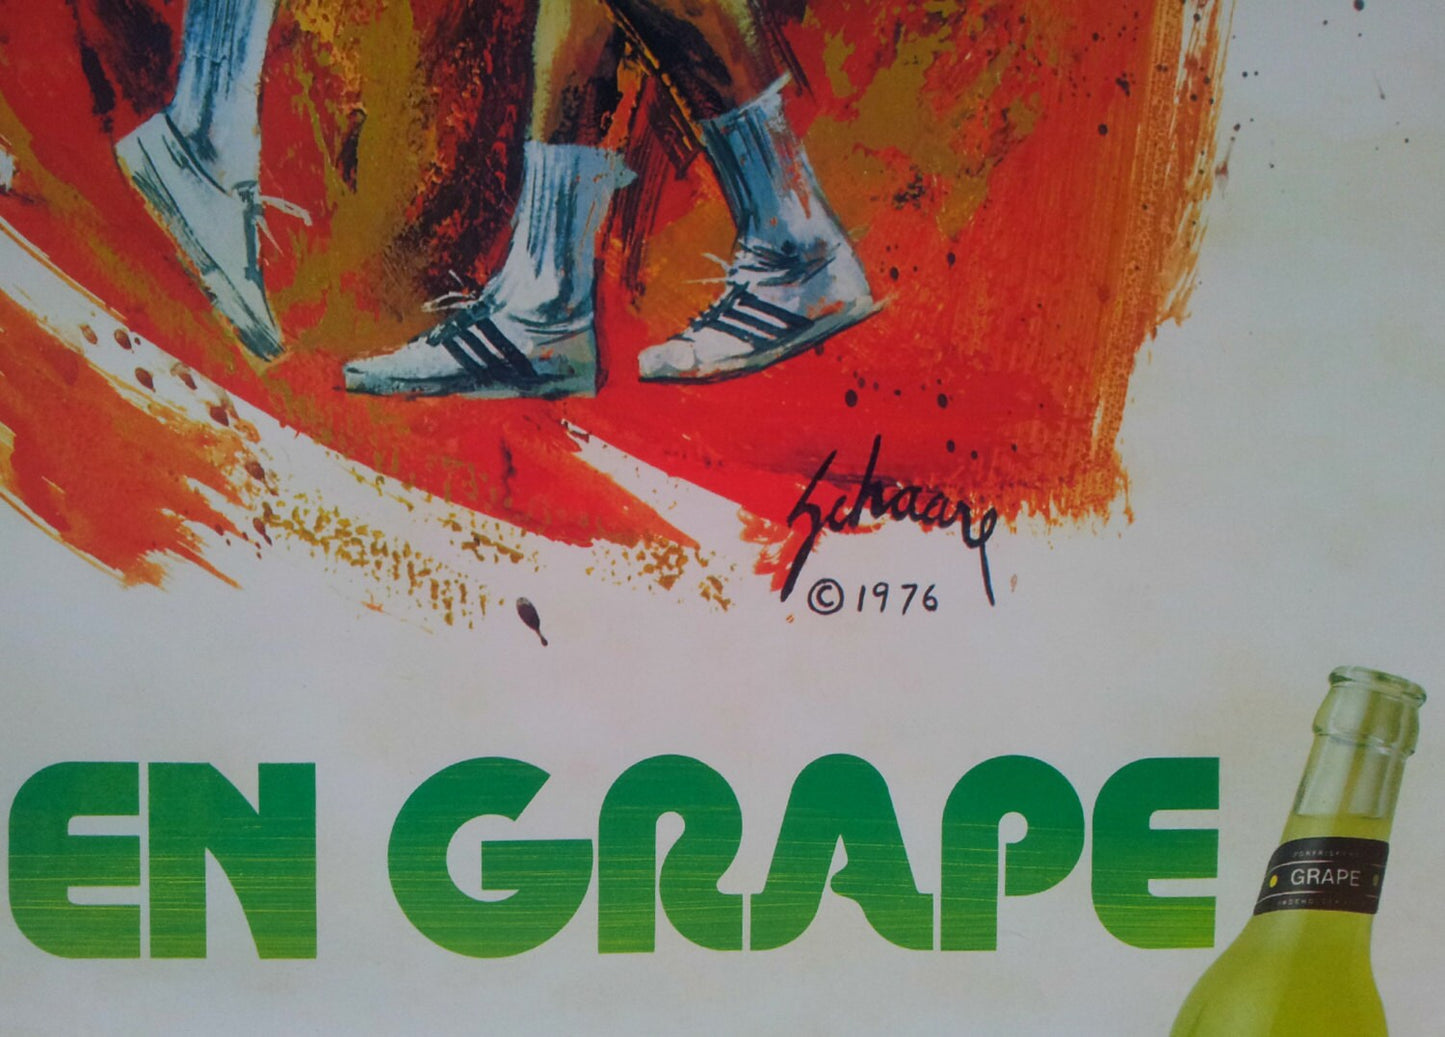 1976 Carlsberg Grape (Handball) - Original Vintage Poster